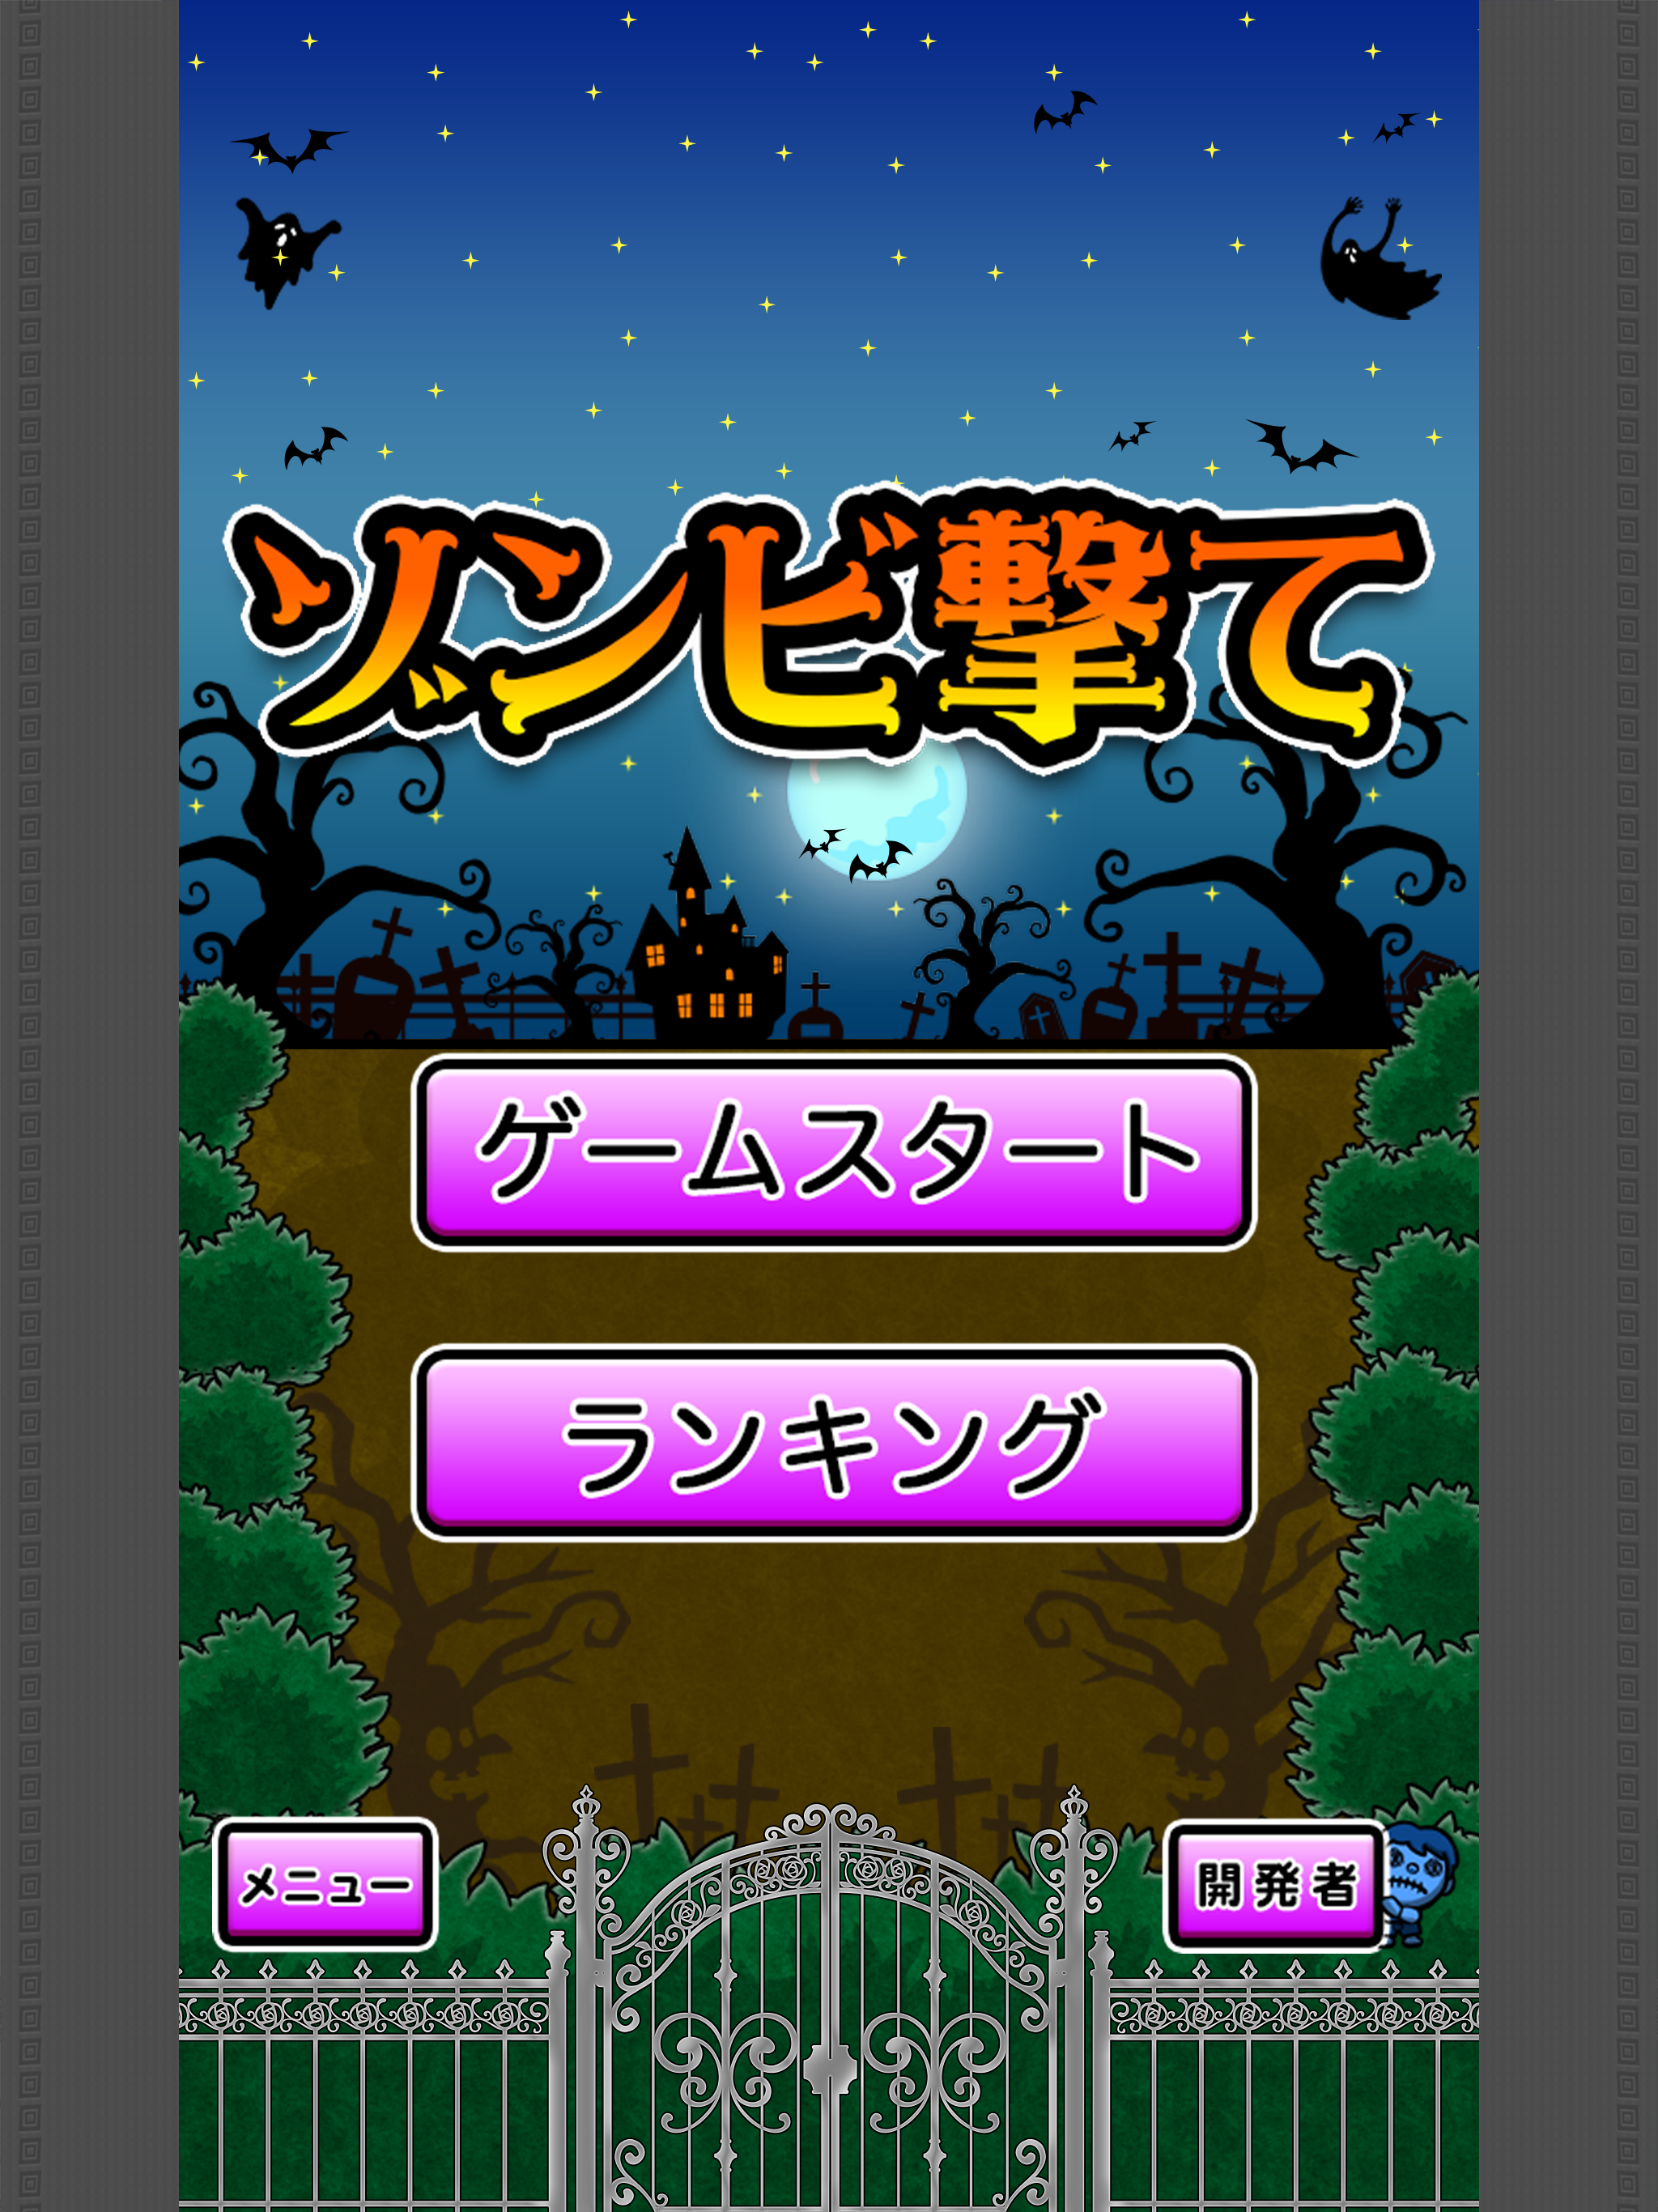 ShotZombie screenshot game